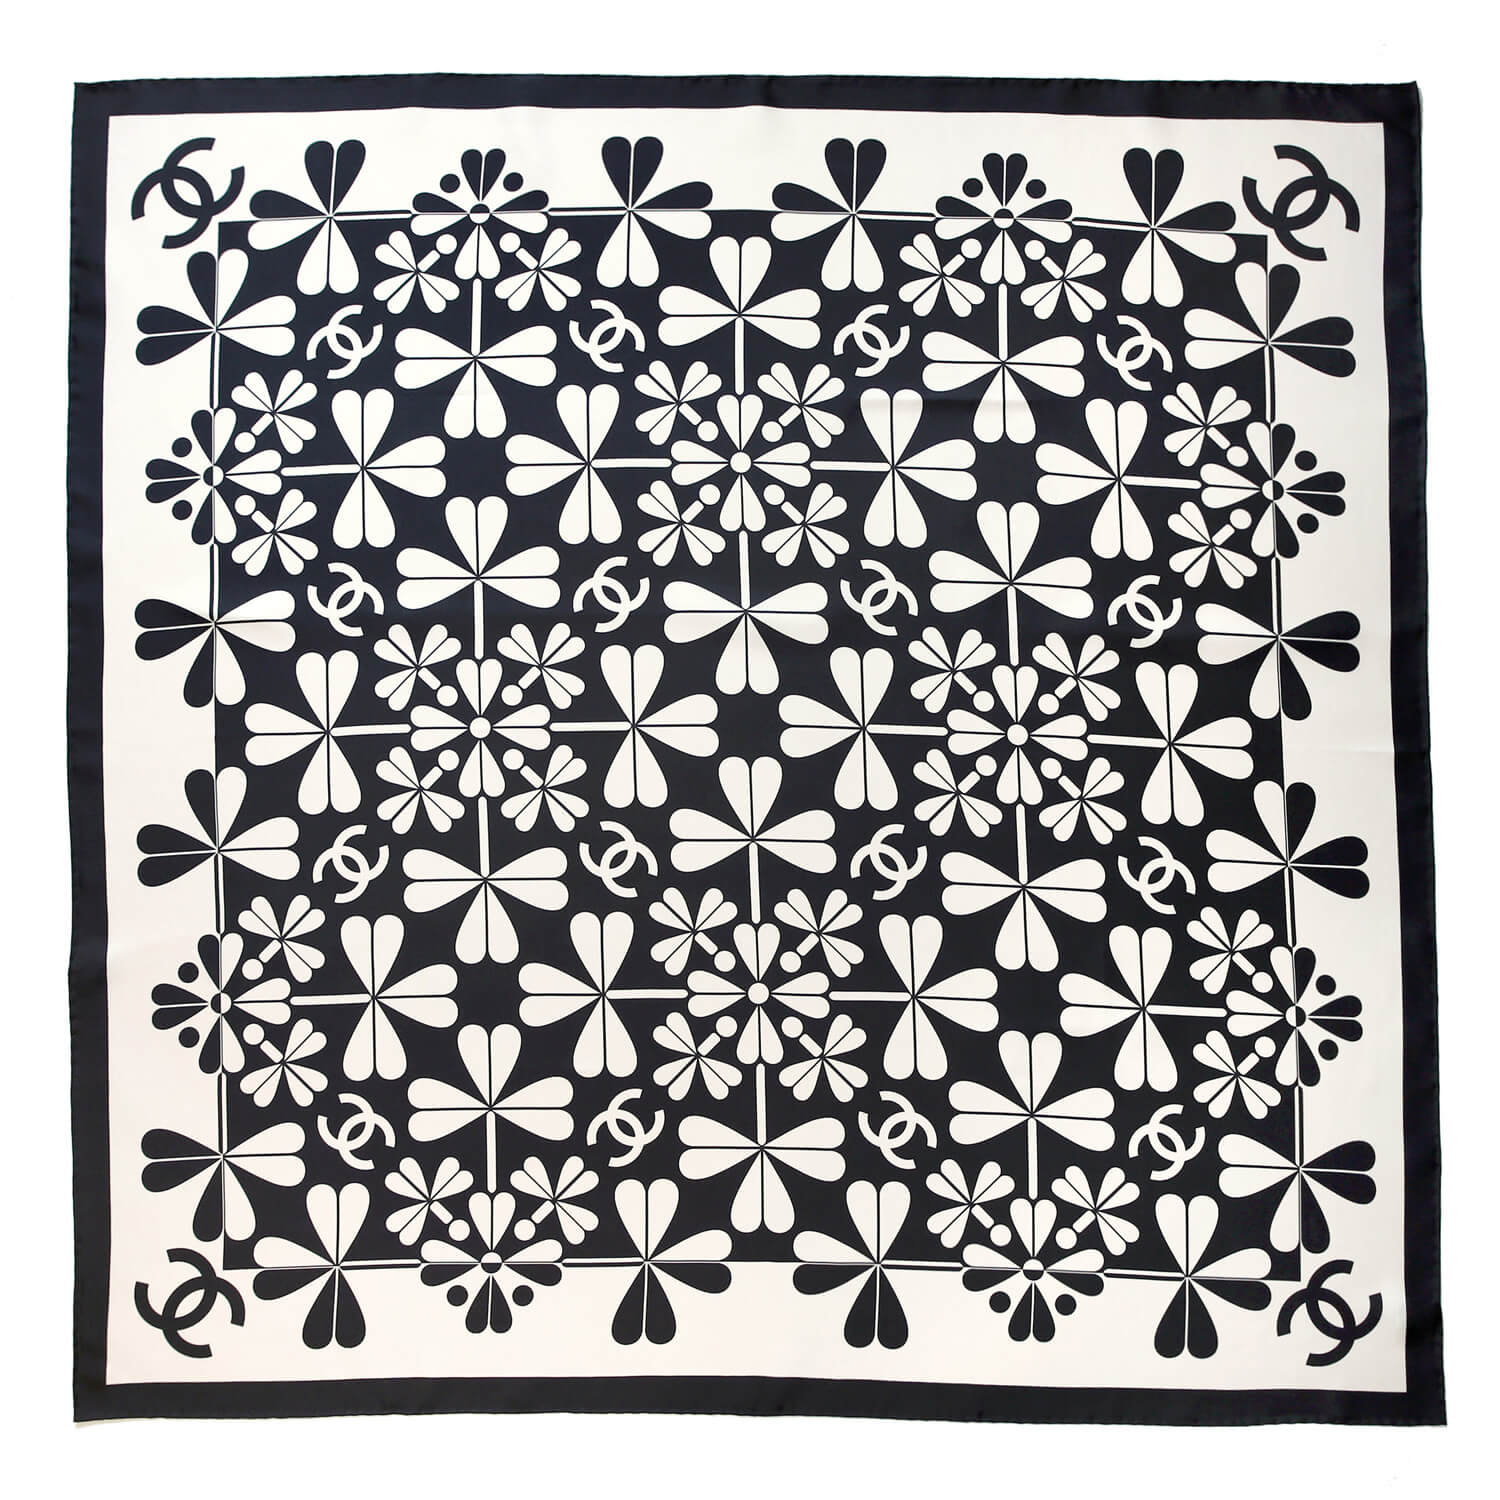 Шелковый платок Chanel 90х90 см, цвет Черно-белый, фото 1